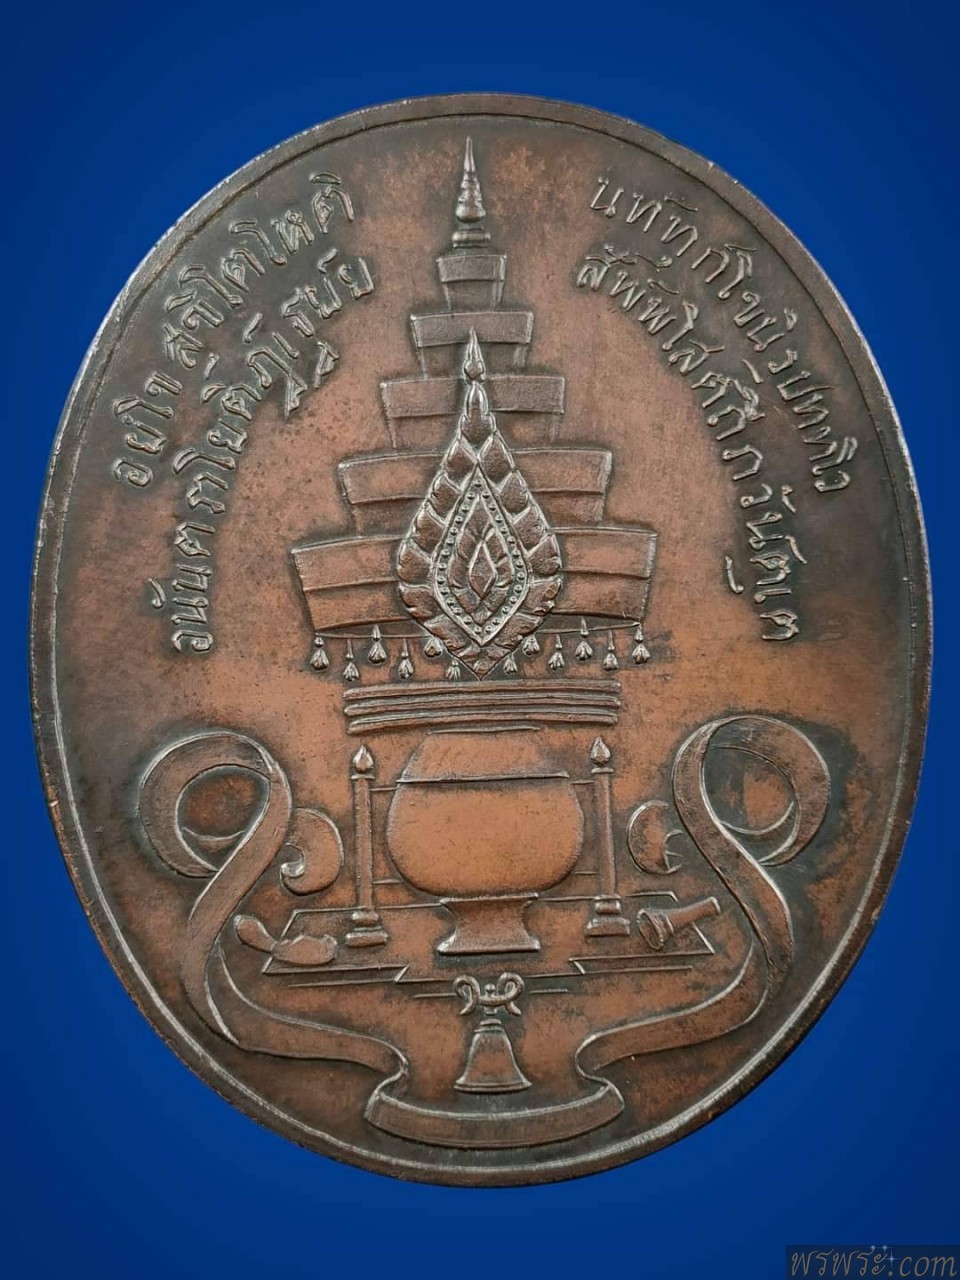 เหรียญ3โค๊ต ที่ระลึกมหาสมณุตตมาภิเศก พระเจ้าบรมวงษเธอ กรมสมเด็จพระปวเรศวริยาลงกรณ์ ๒๗ พฤศจิกายน รัตนโกสินทรศก ๑๑๐